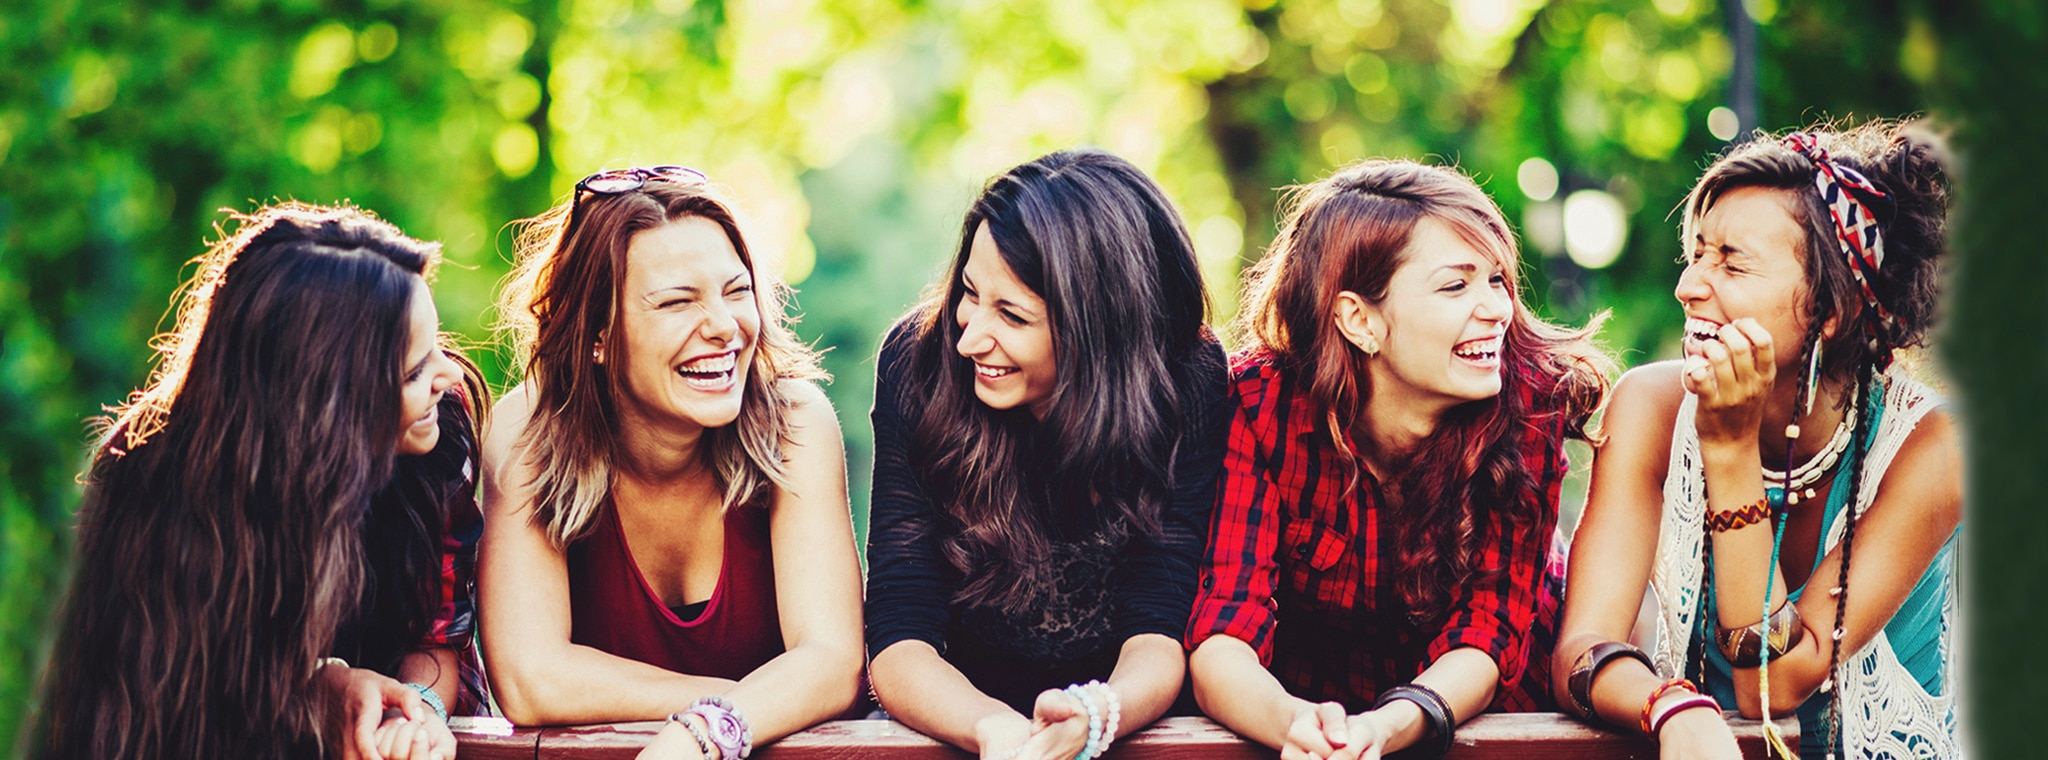 Cinco amigas felices con pelo de distintos largos y volumen para la página de la línea Ceramidas de Sedal.  